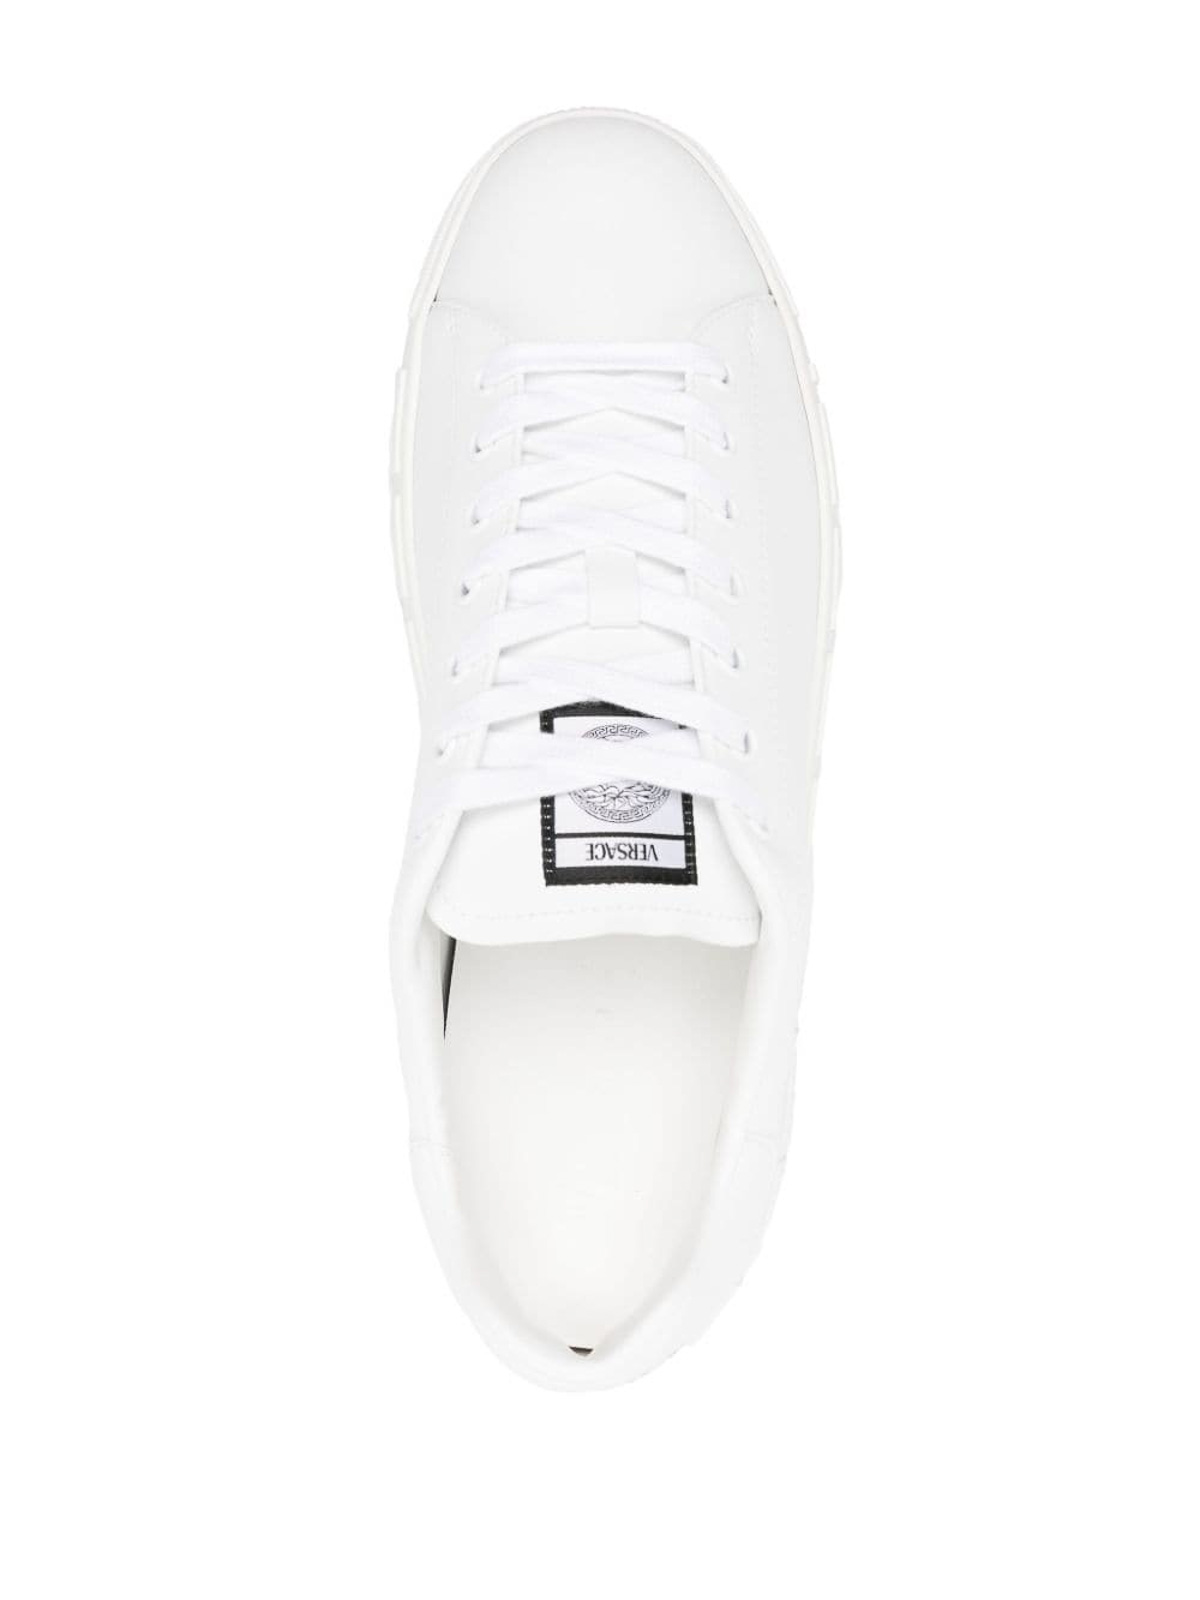 Shop Versace Zapatillas - Greca In White